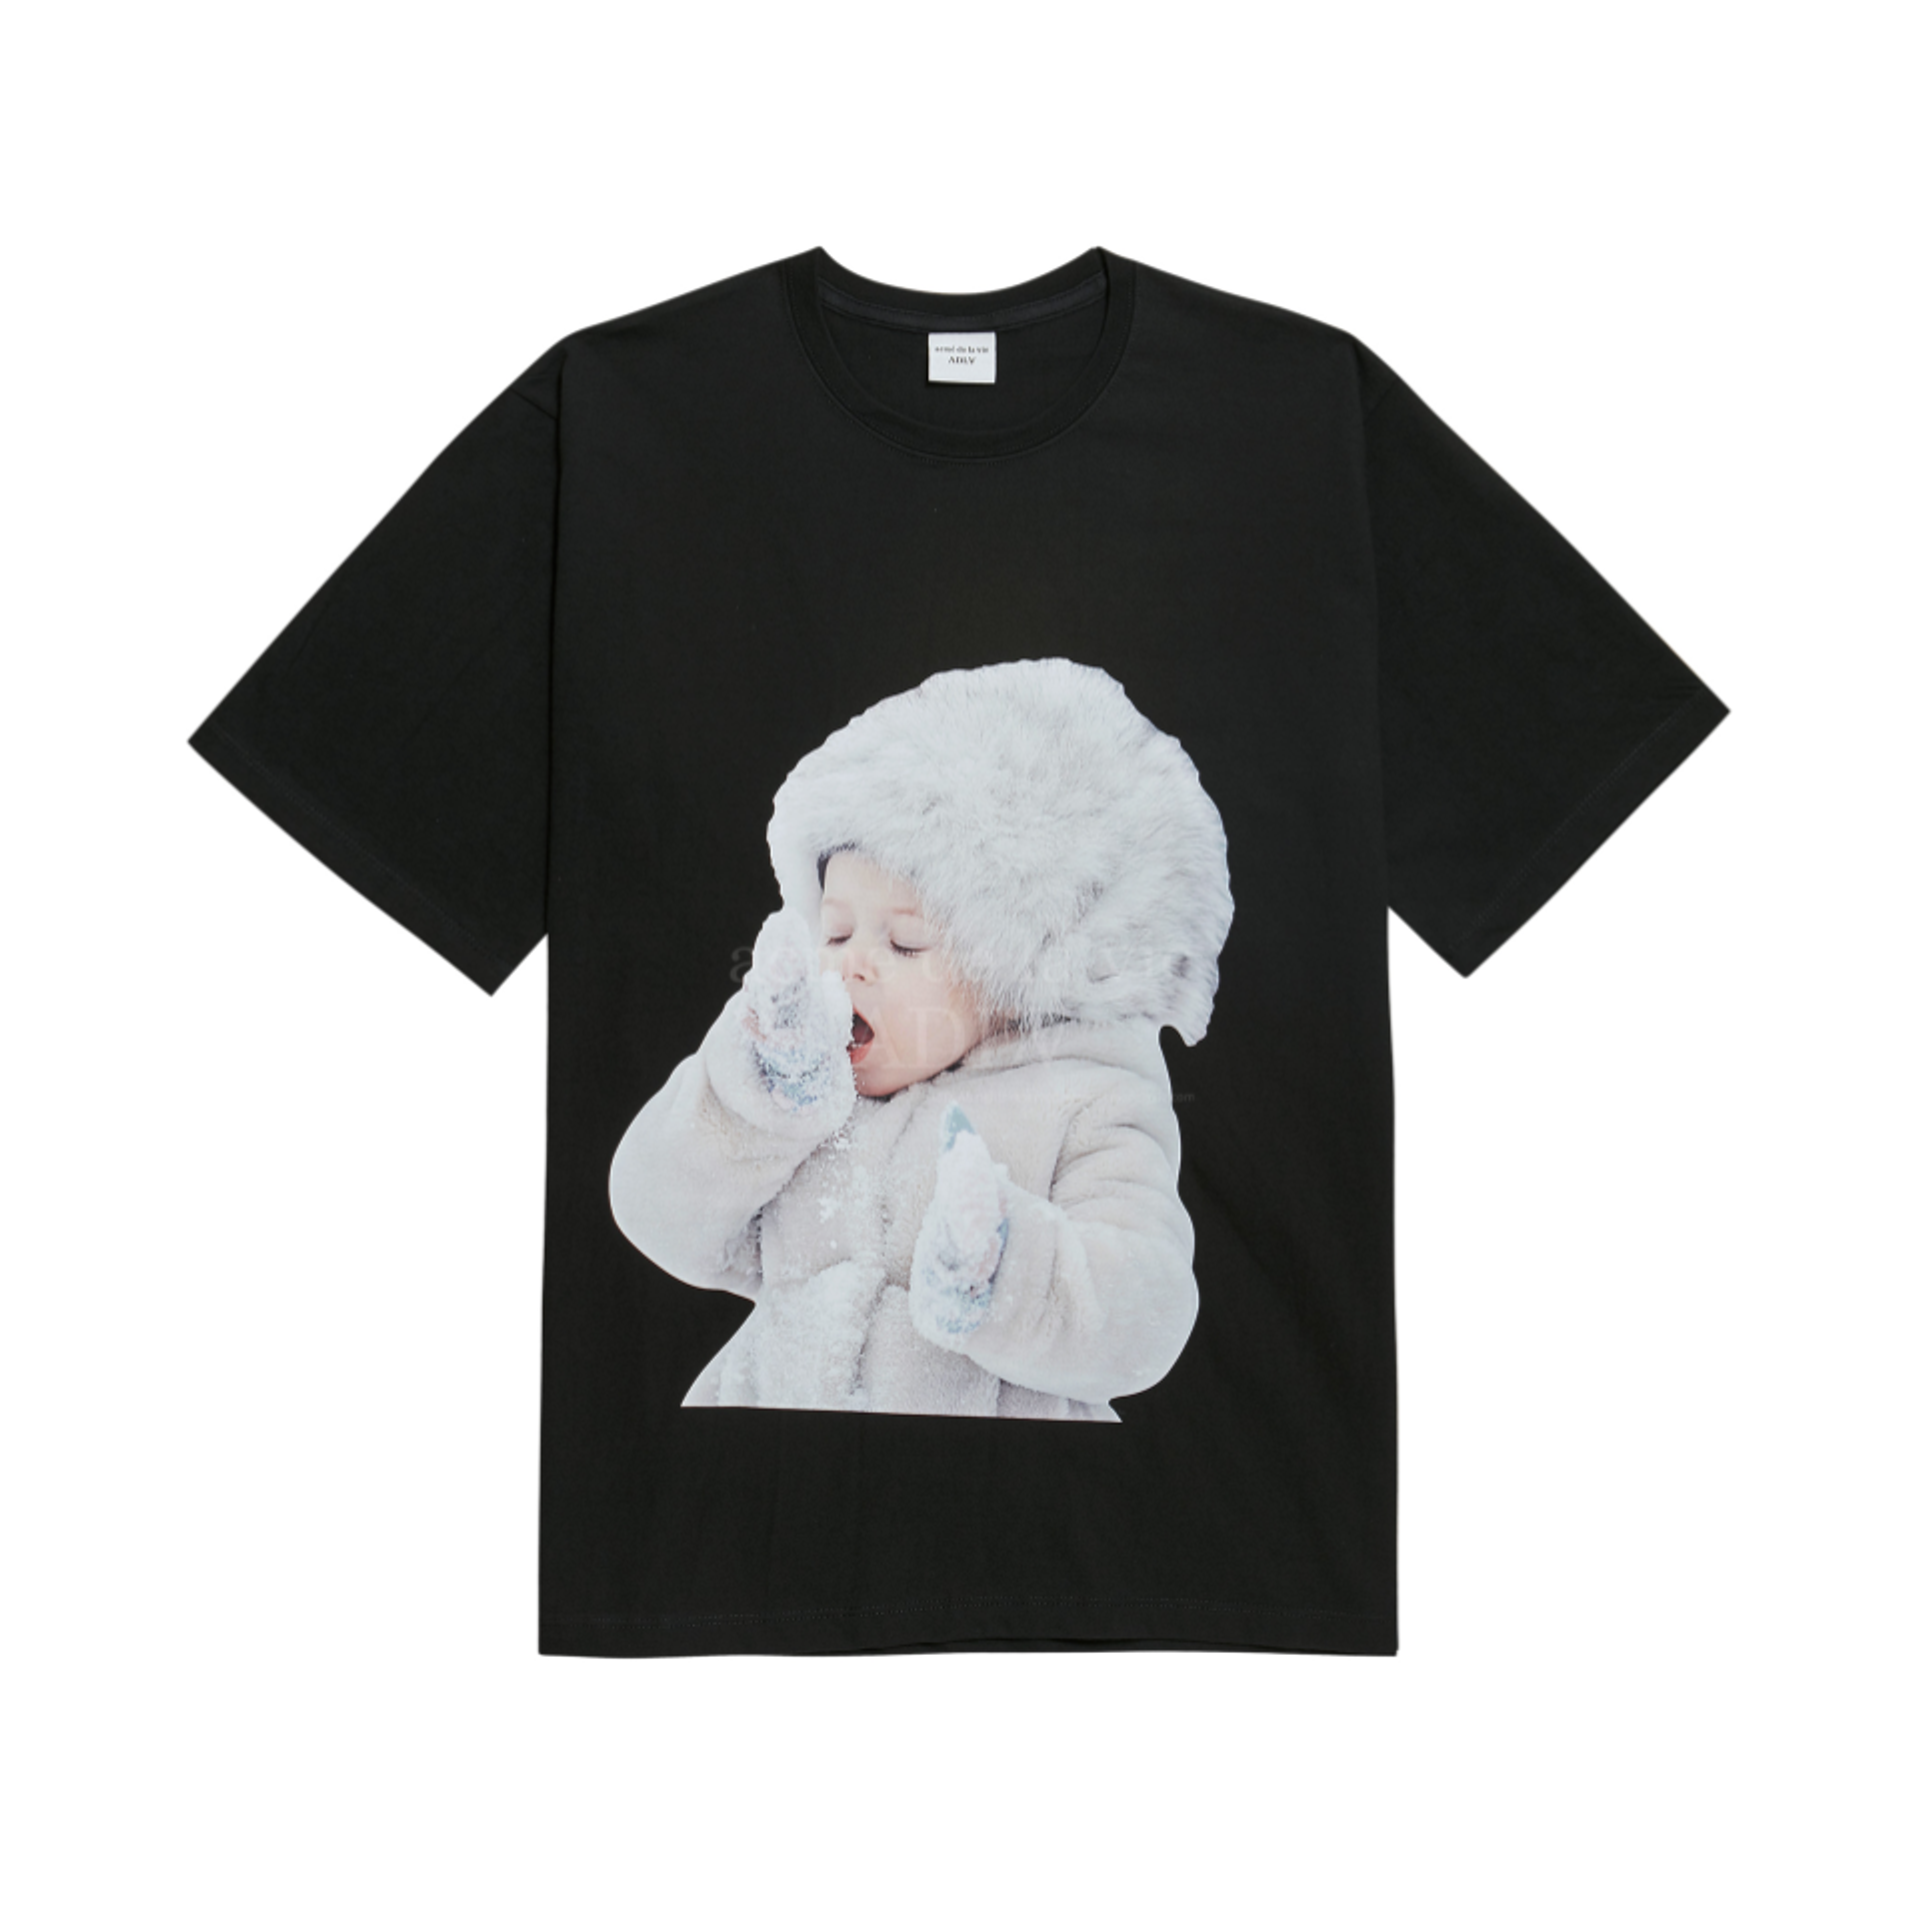 Acme De La Vie Baby Face Short Sleeve T-Shirt Black Snow 